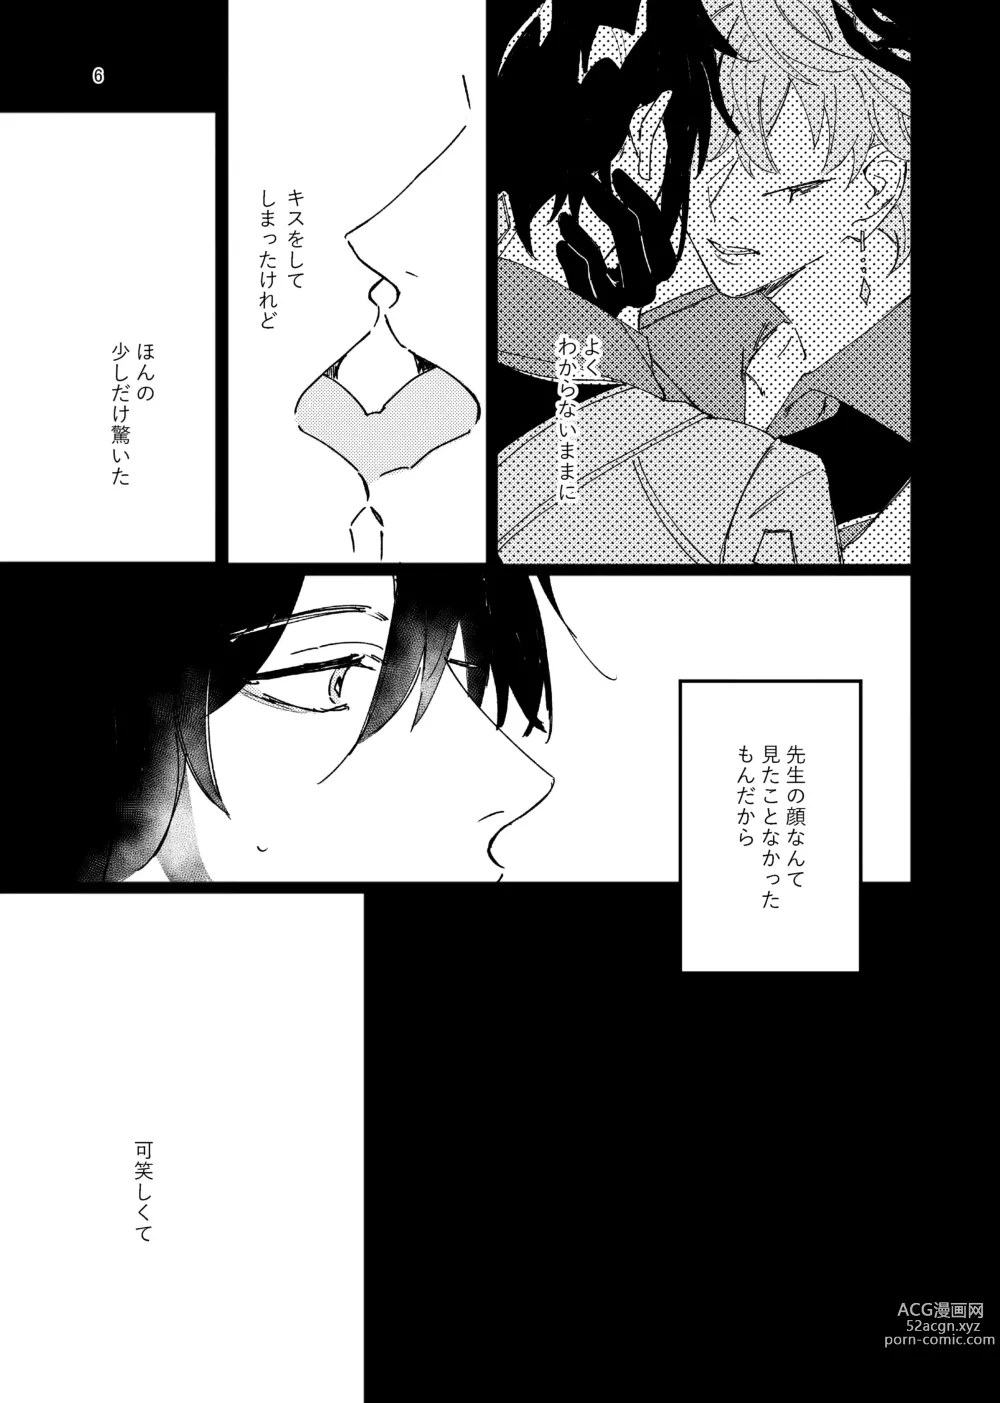 Page 6 of doujinshi Aizu